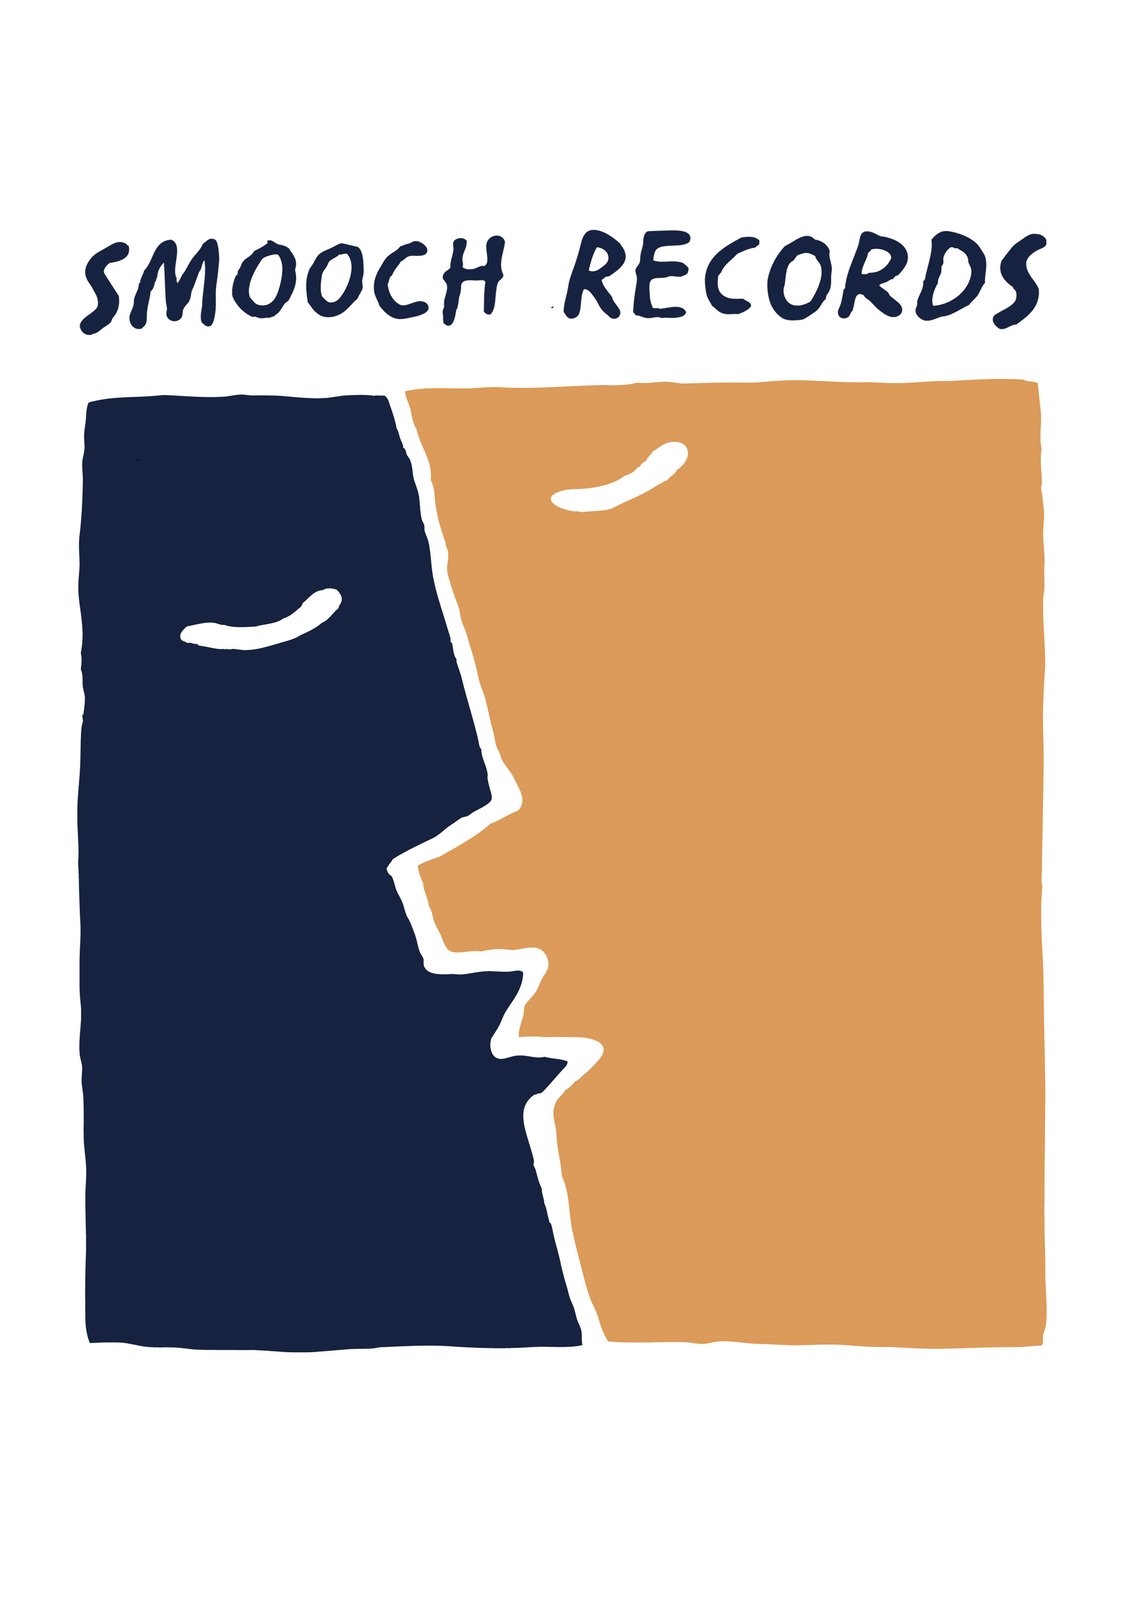 Smooch Records